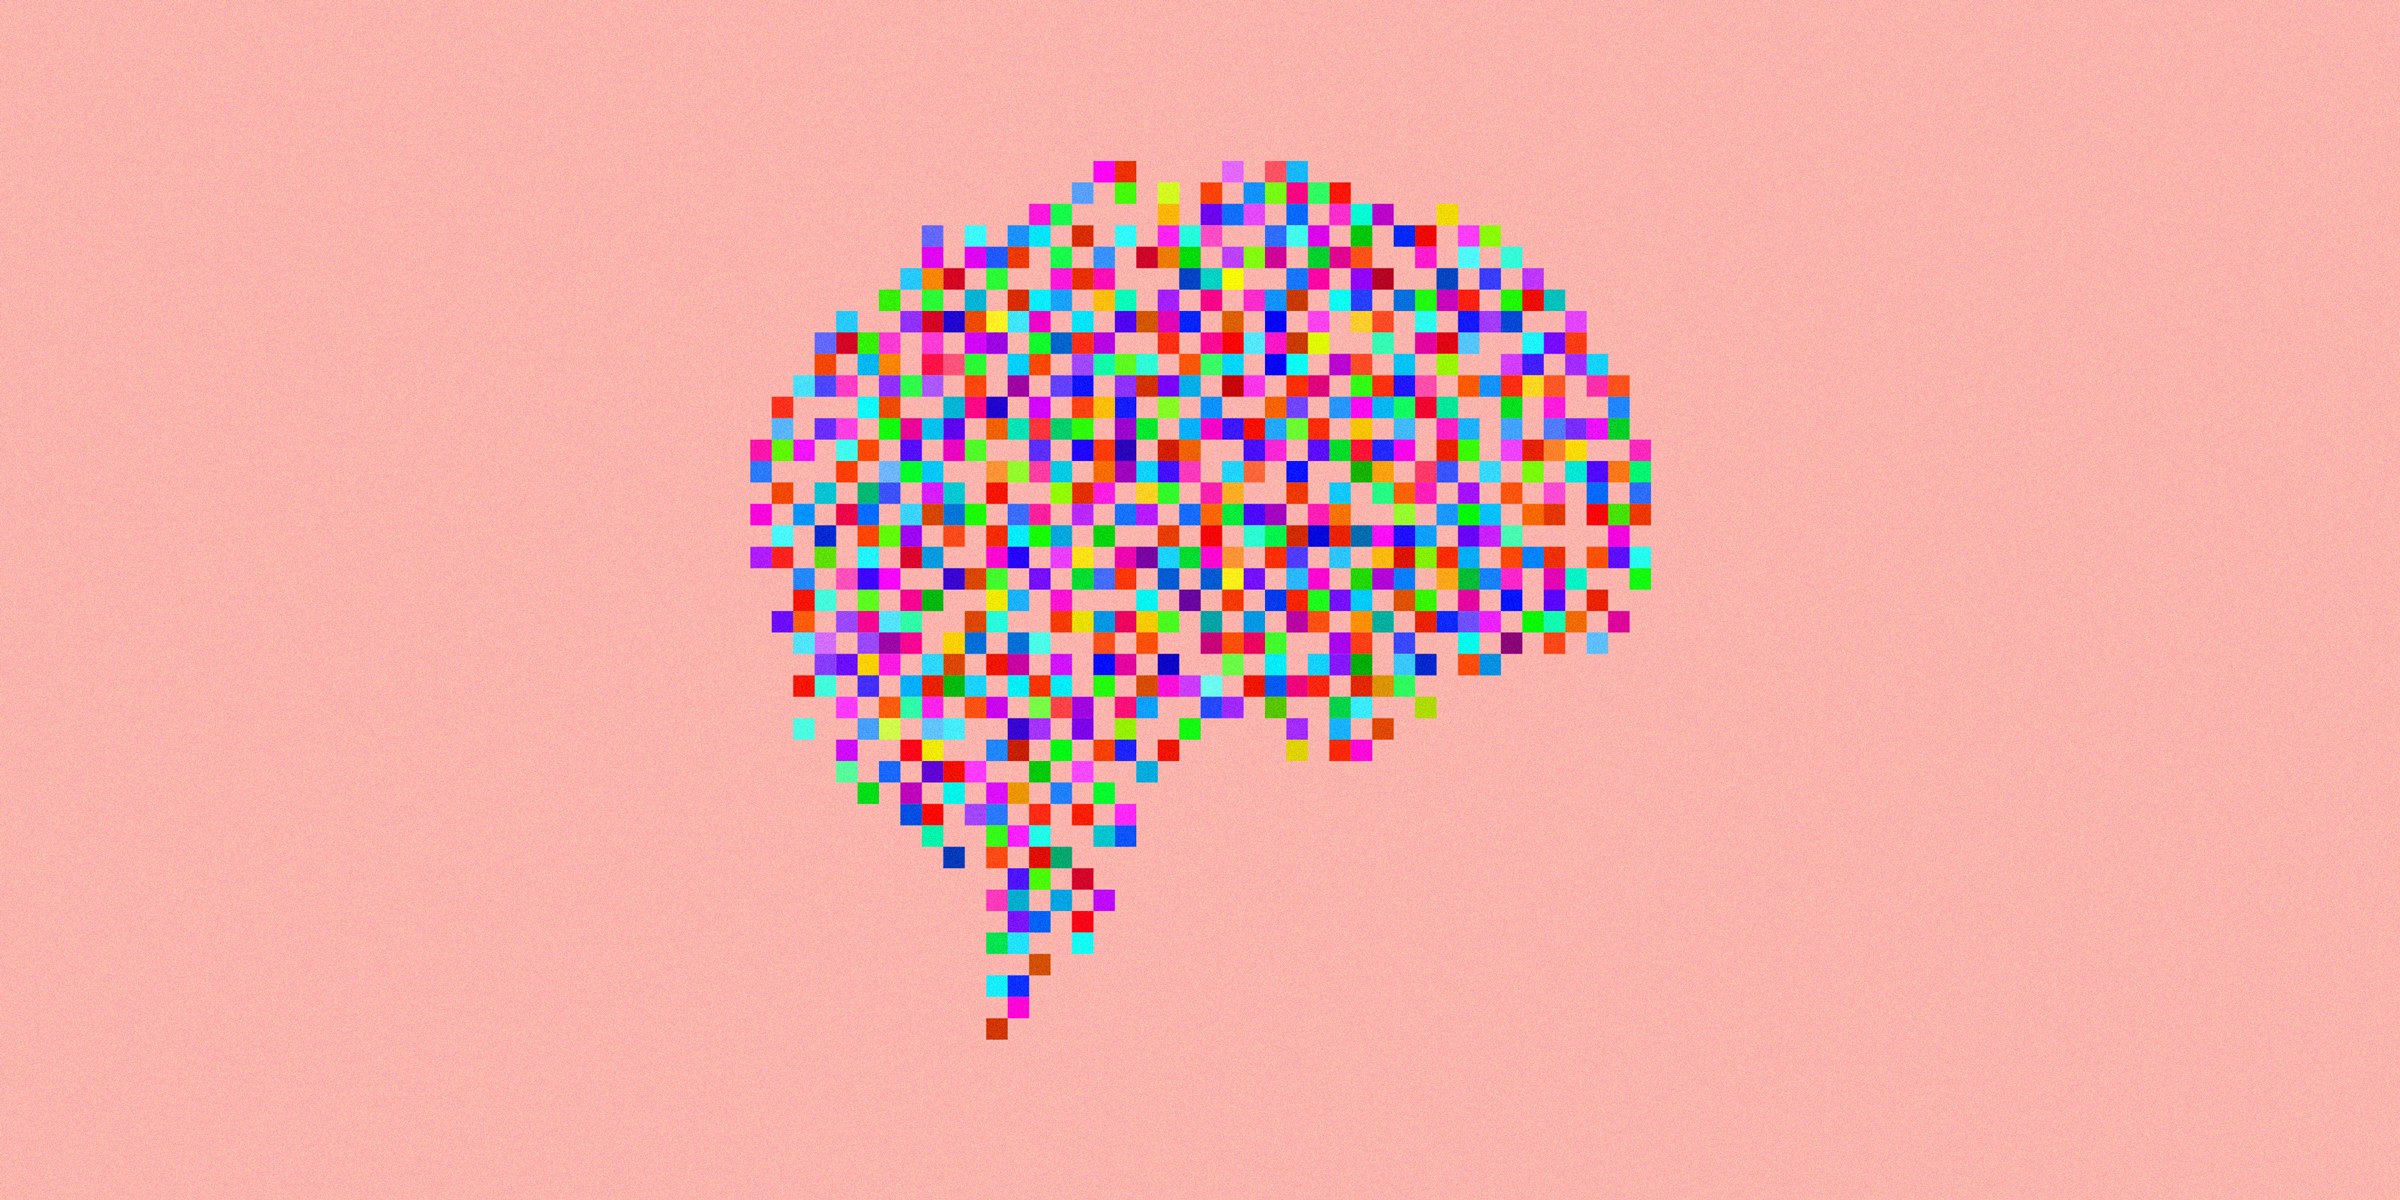 Використовують наш мозок глибоке навчання для осмислення світу?